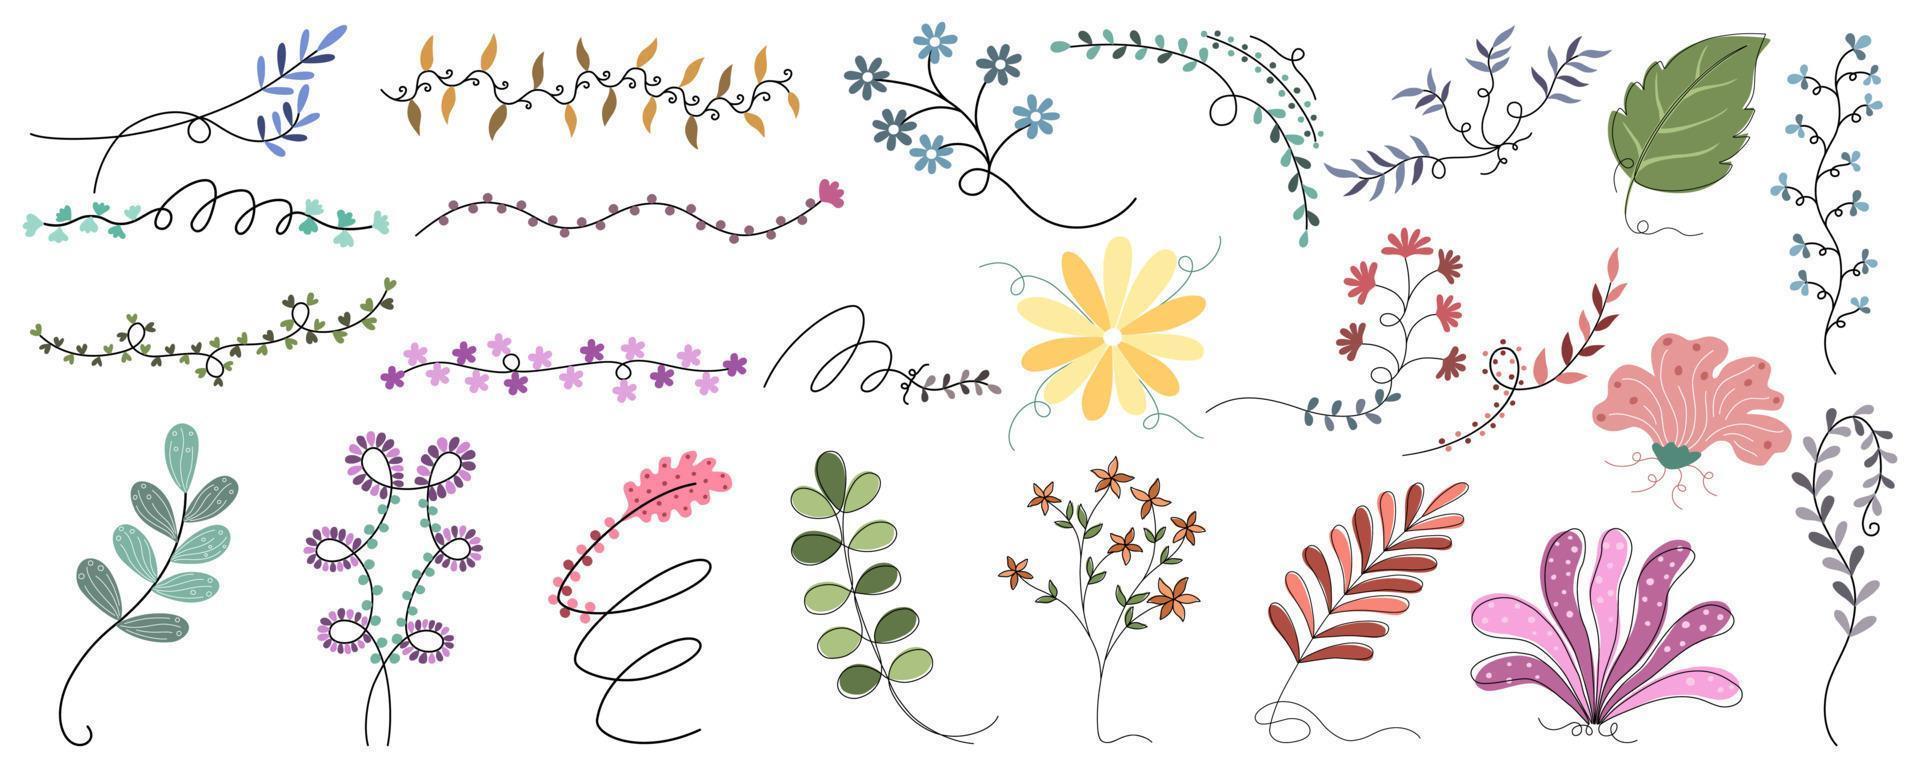 conjunto vetorial de flores e folhas projetadas em estilo doodle para design de cartão, decorações temáticas de primavera, álbum de recortes, decorações de molduras, padrões de papel, cartão de casamento, impressão digital e muito mais. vetor